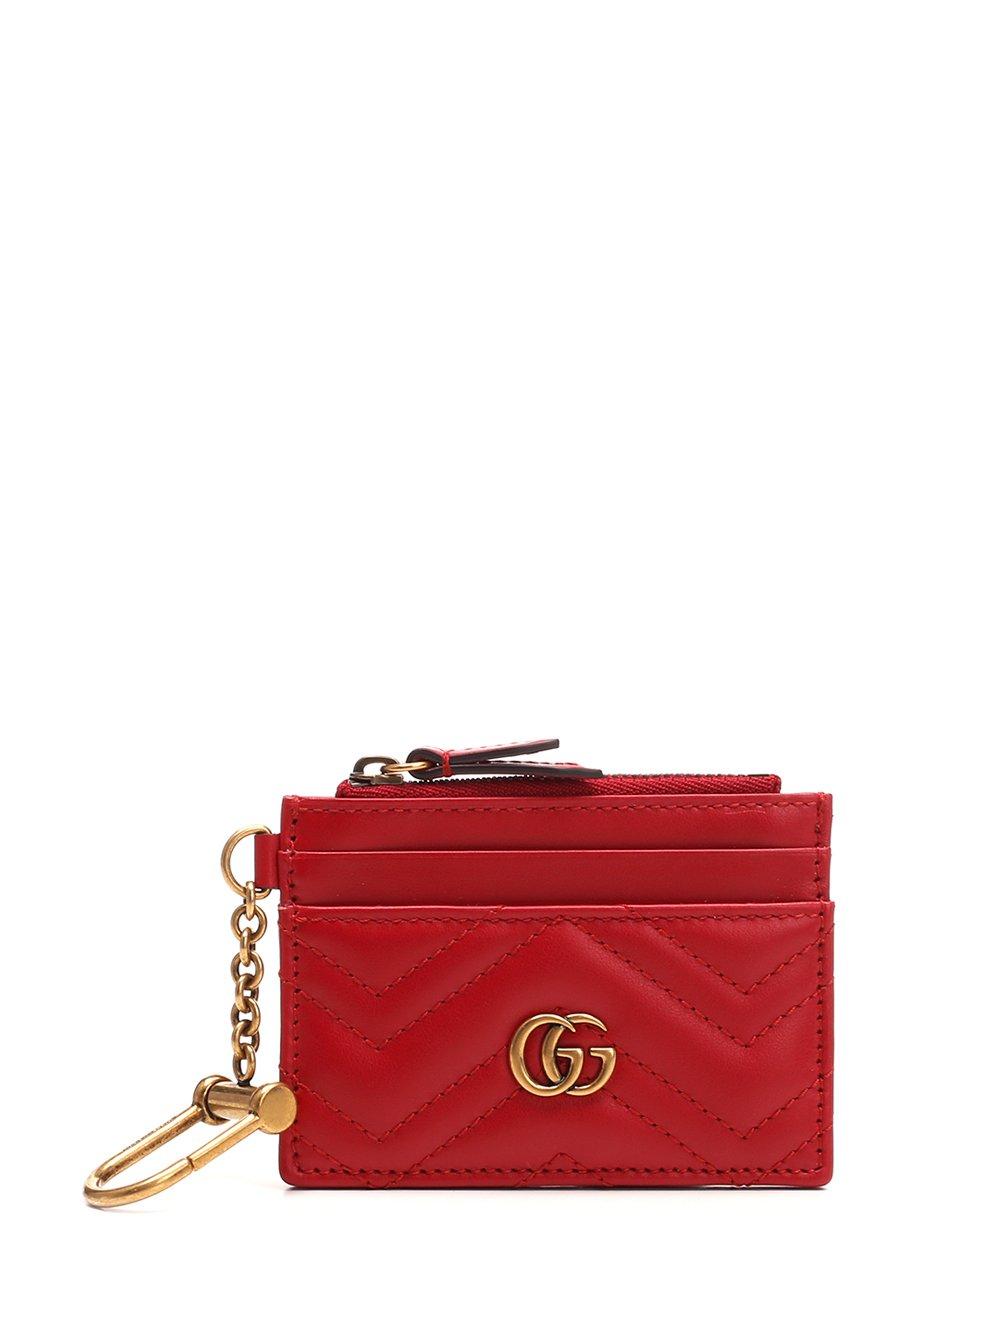 Gucci GG Marmont Keychain Wallet - Farfetch